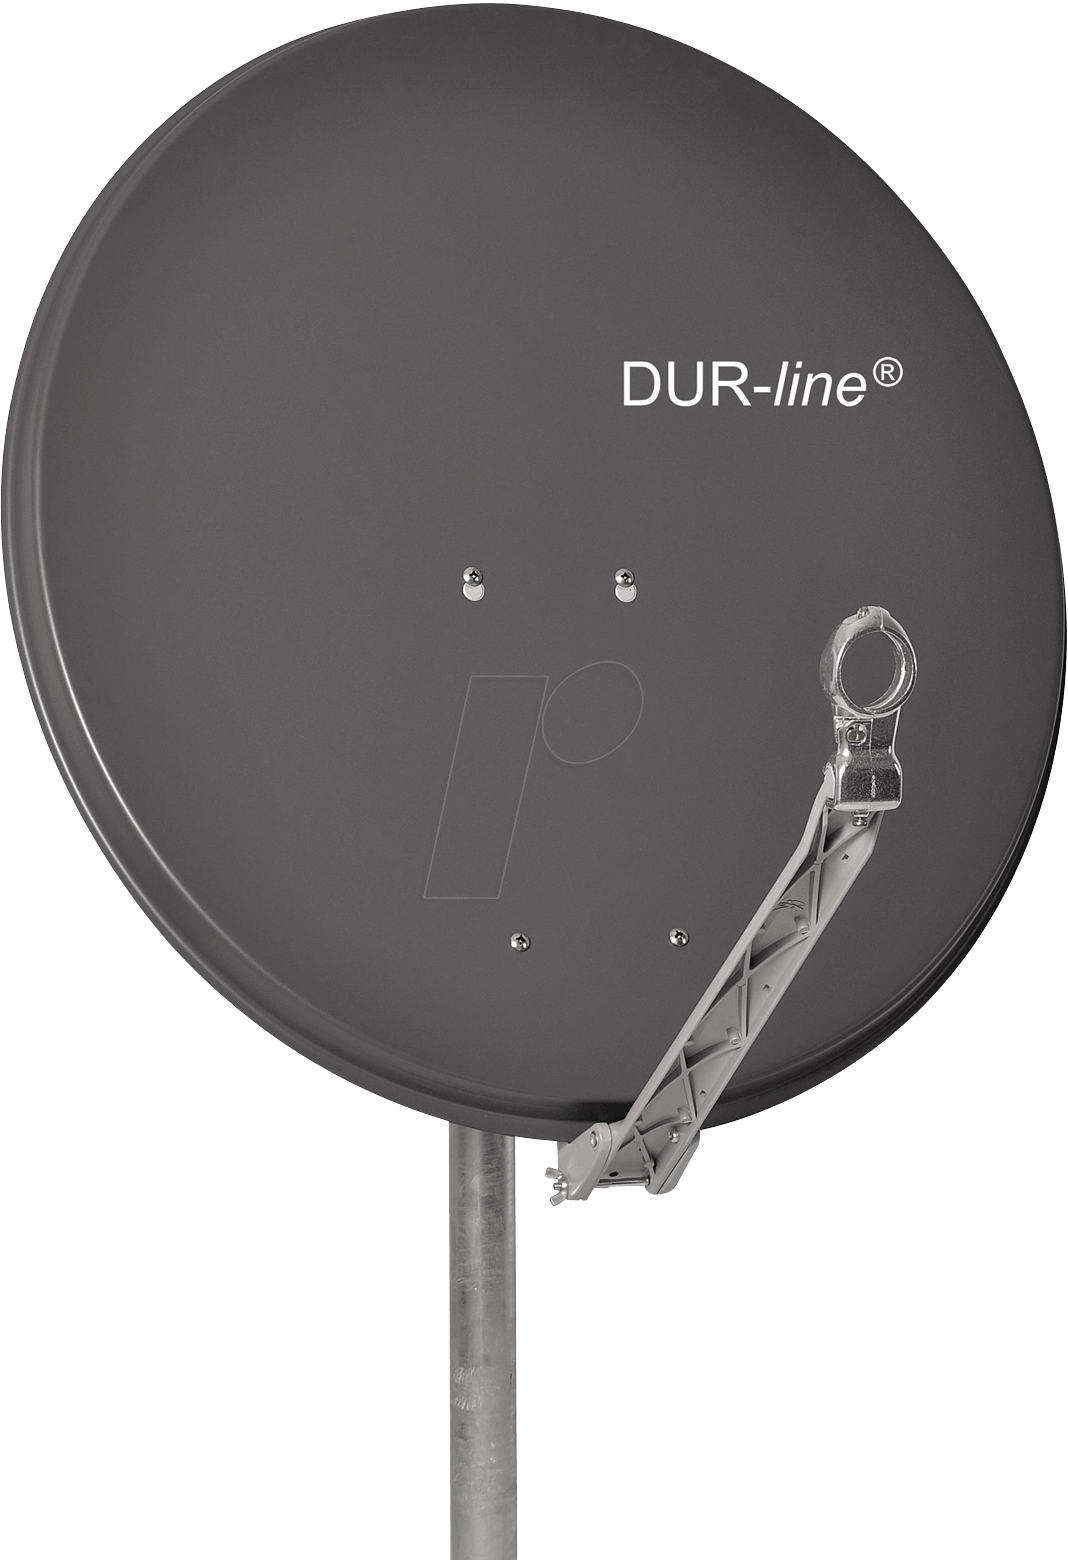 Dur-line Select - Low-noise Block Downconverter (1068x1560), Png Download